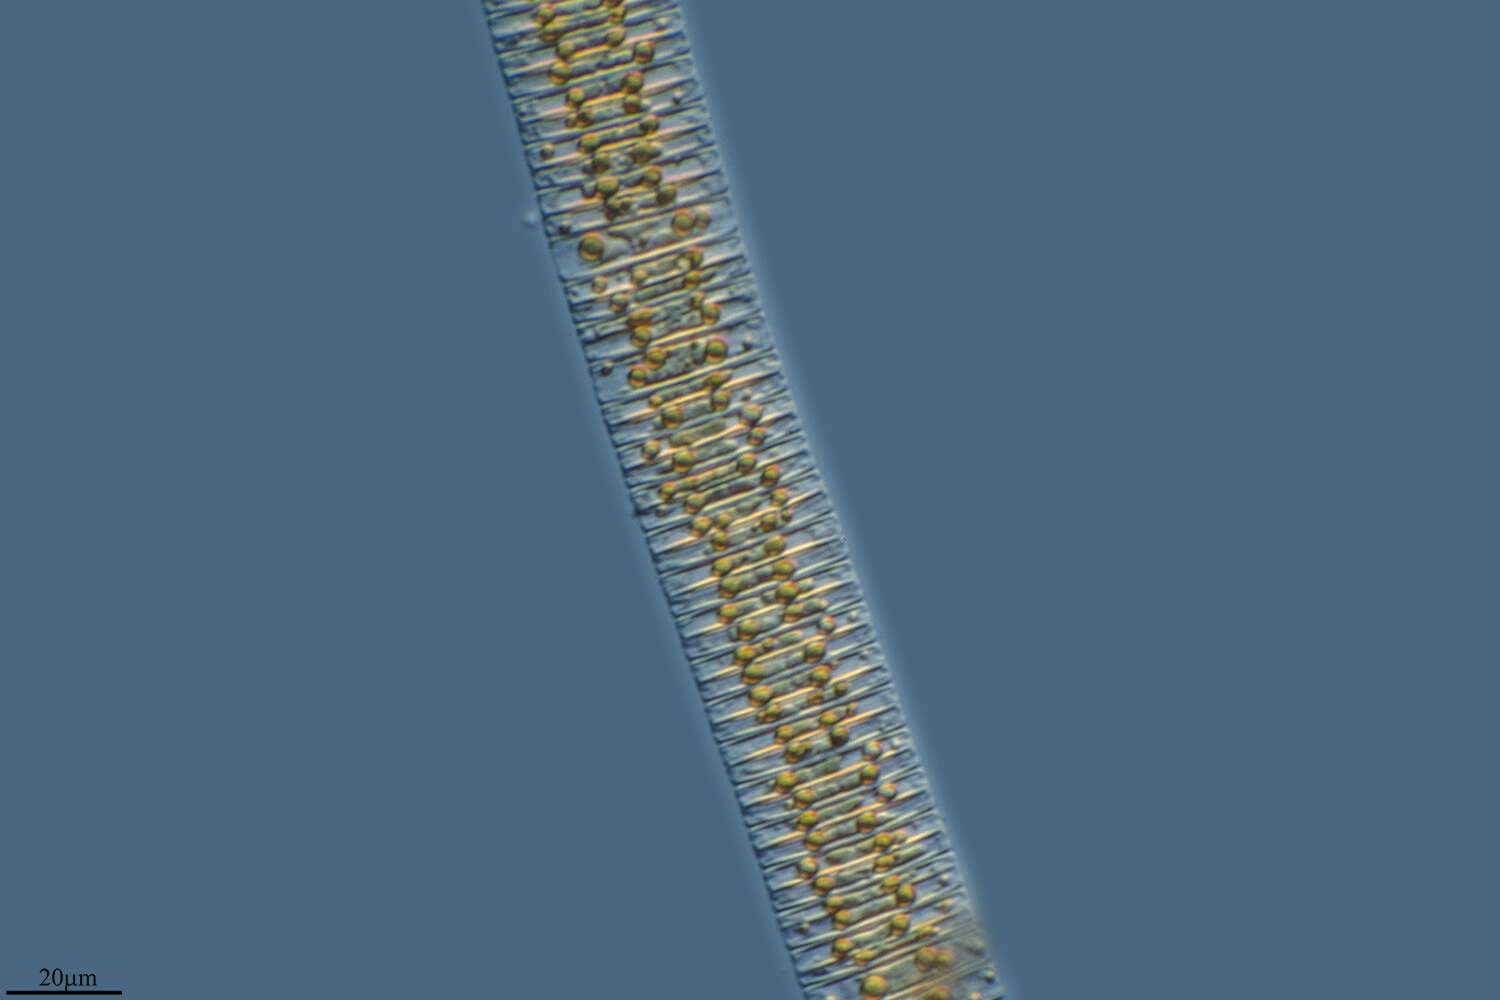 Sivun Fragilariales kuva